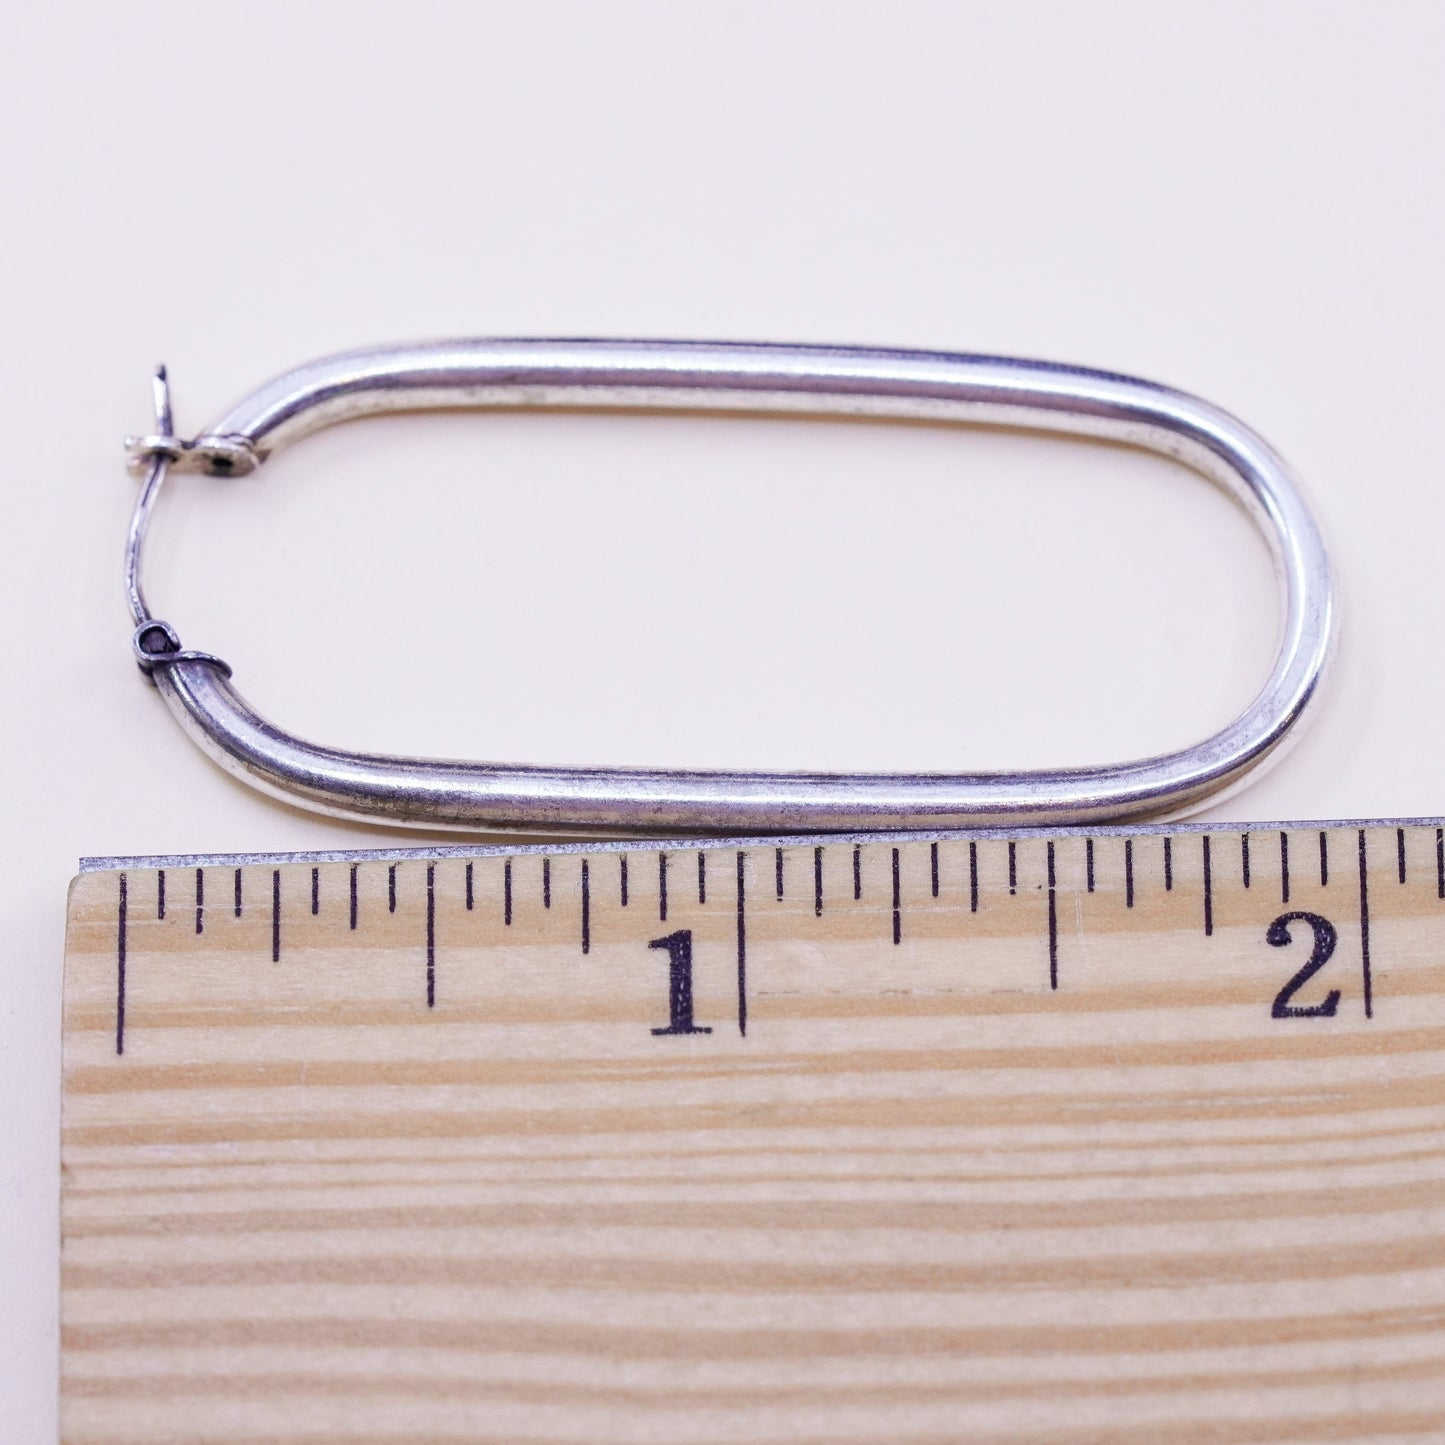 2” Vintage sterling silver loop earrings rectangular minimalist primitive hoops